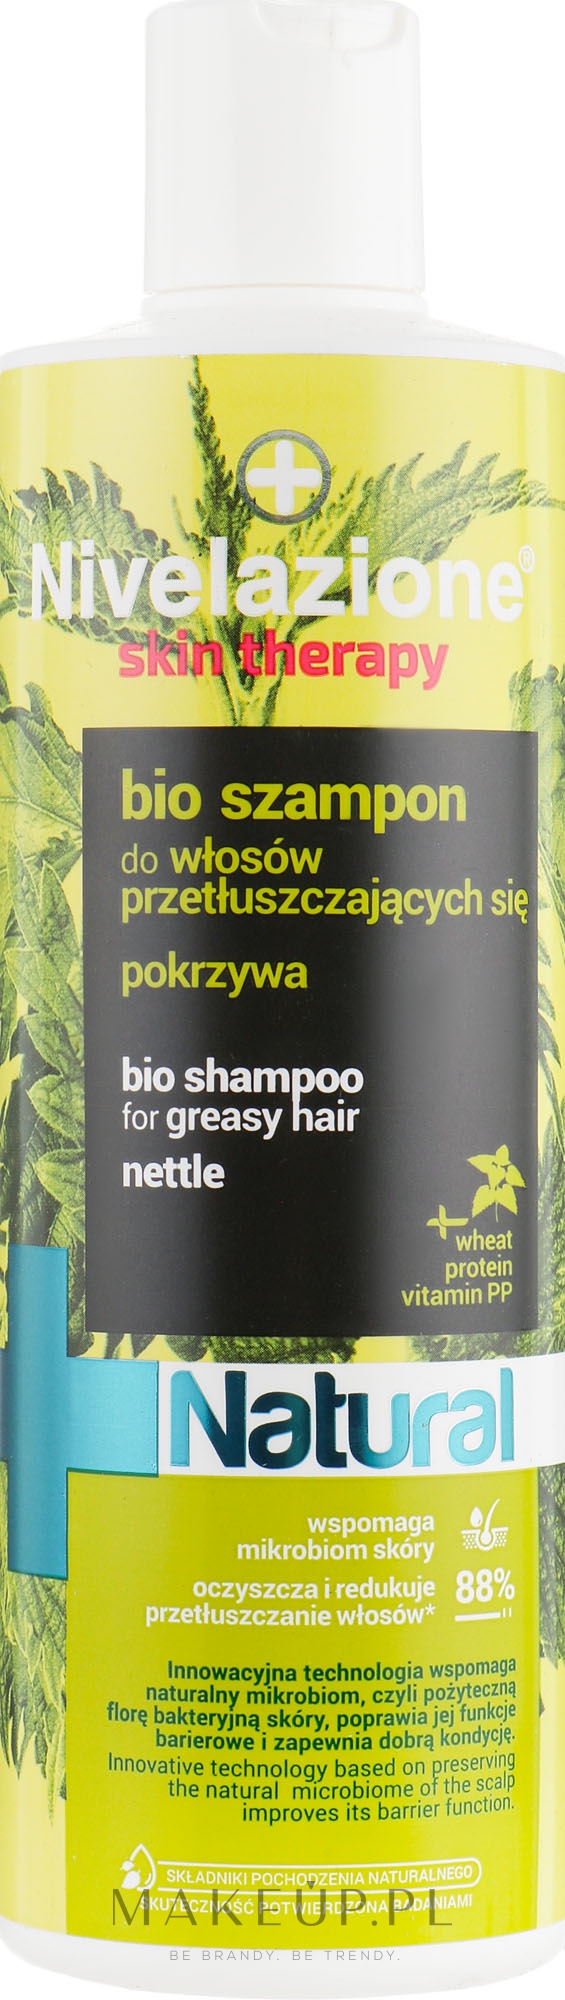 nivelazione terapy bio szampon do włosów przetłuszczających się